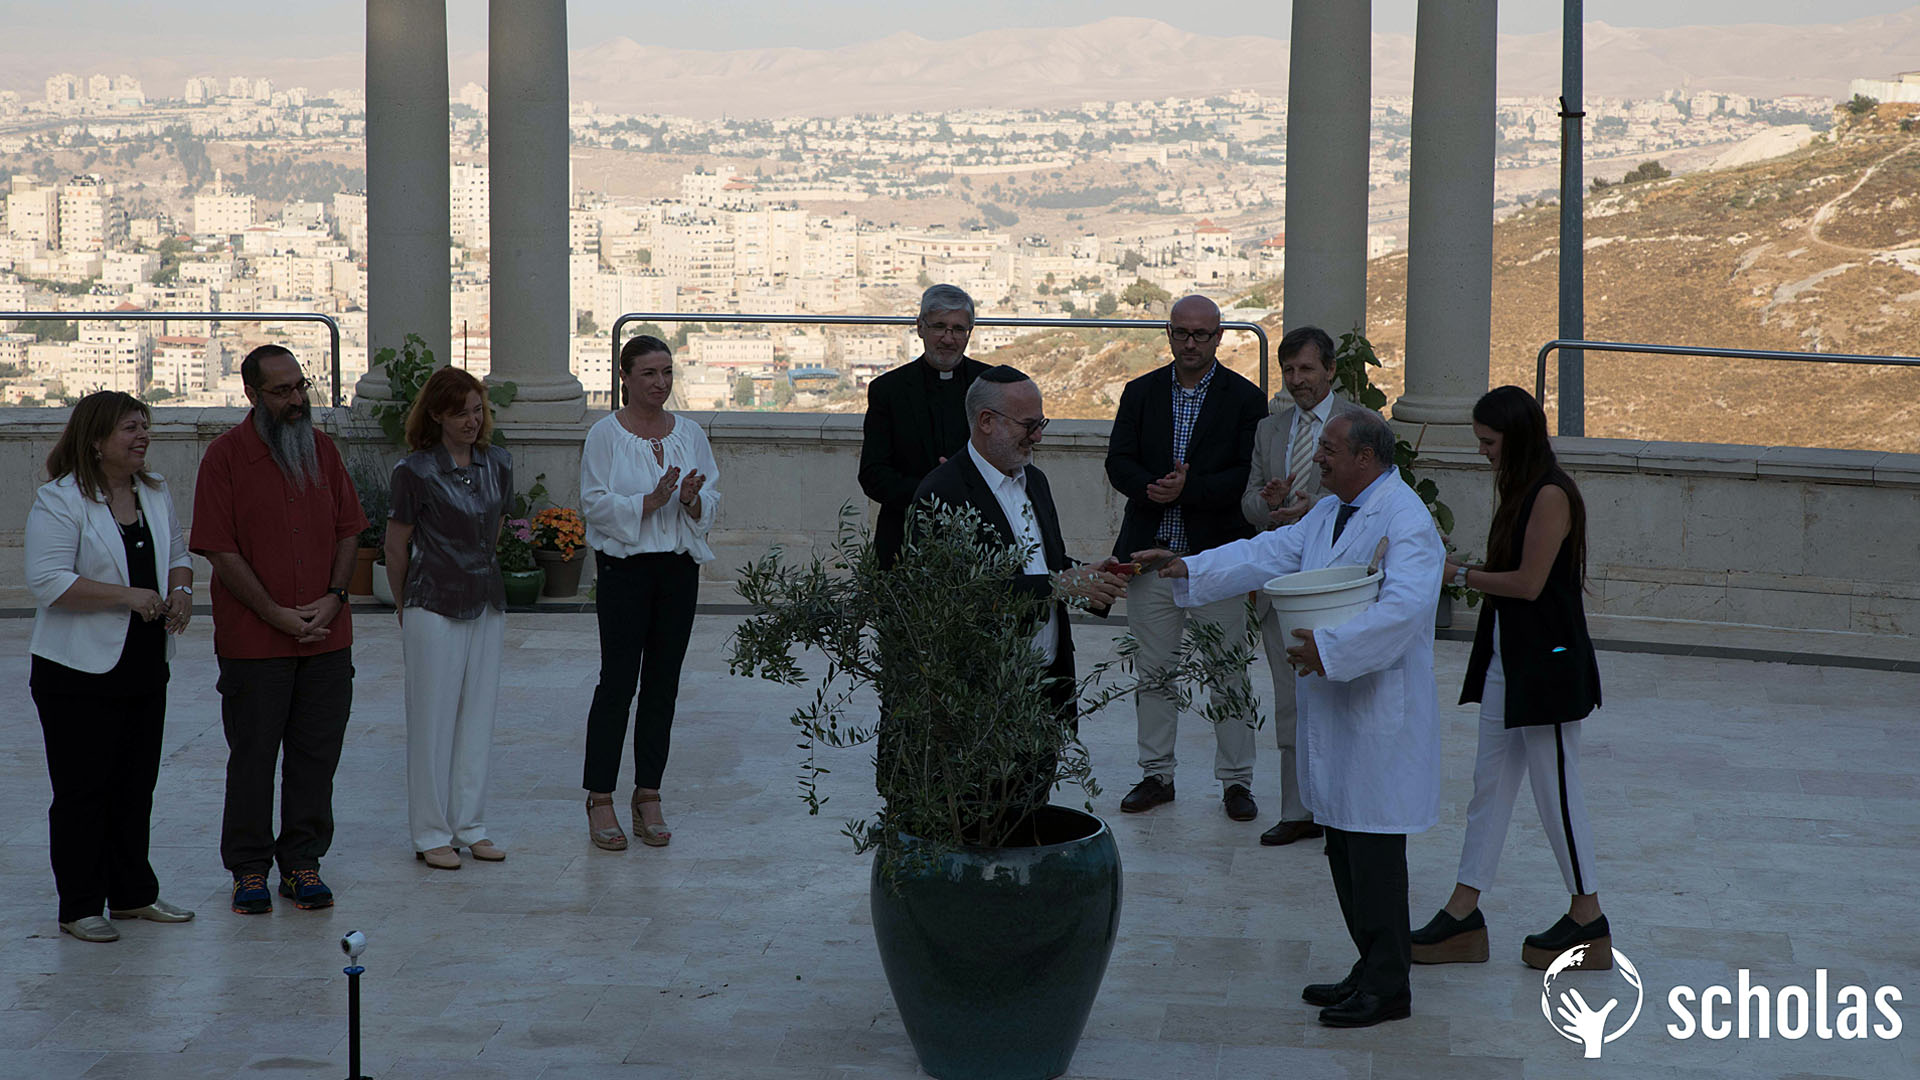 Der Olivenbaum soll die Friedensabsichten der Konferenz untermauern